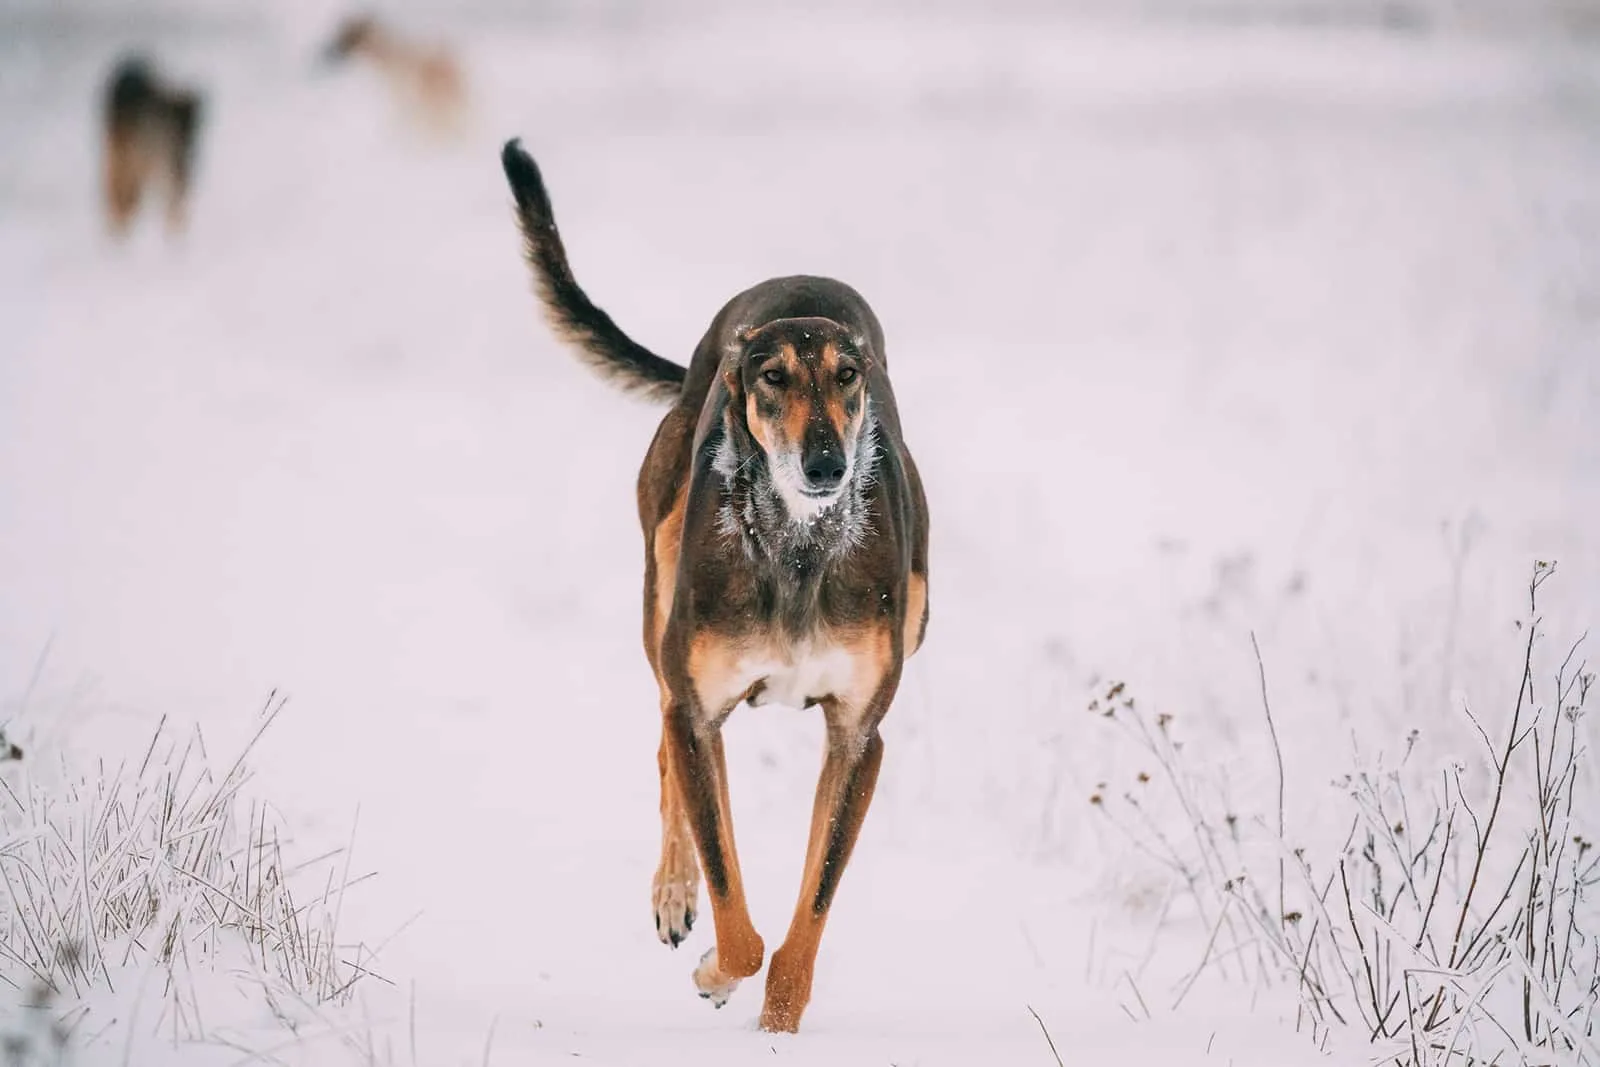 hortaya borzaya dog running in the snow